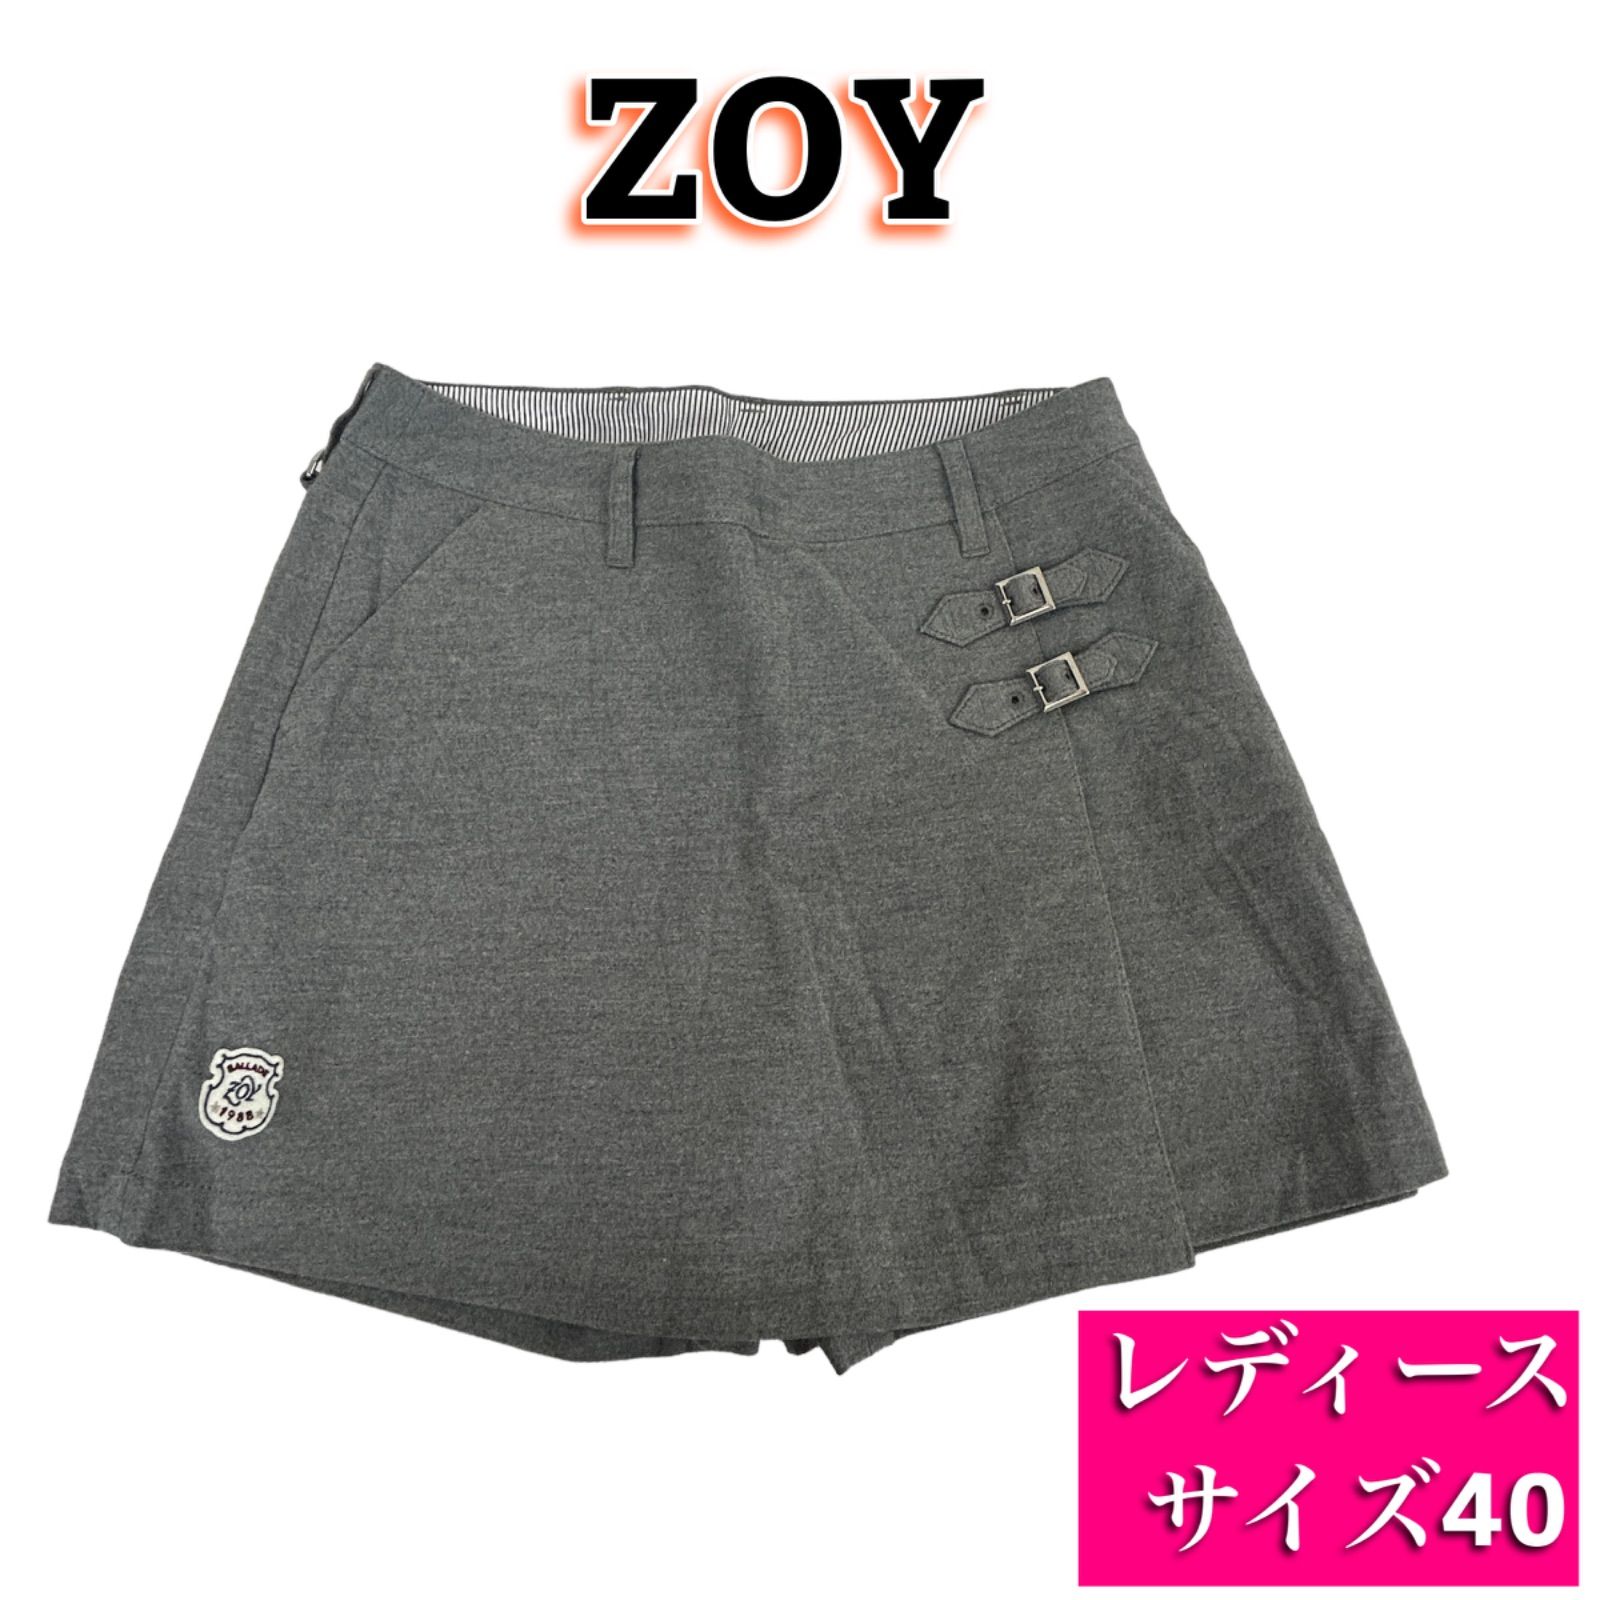 ゴルフスカート zoy ゾーイ - ウエア(女性用)